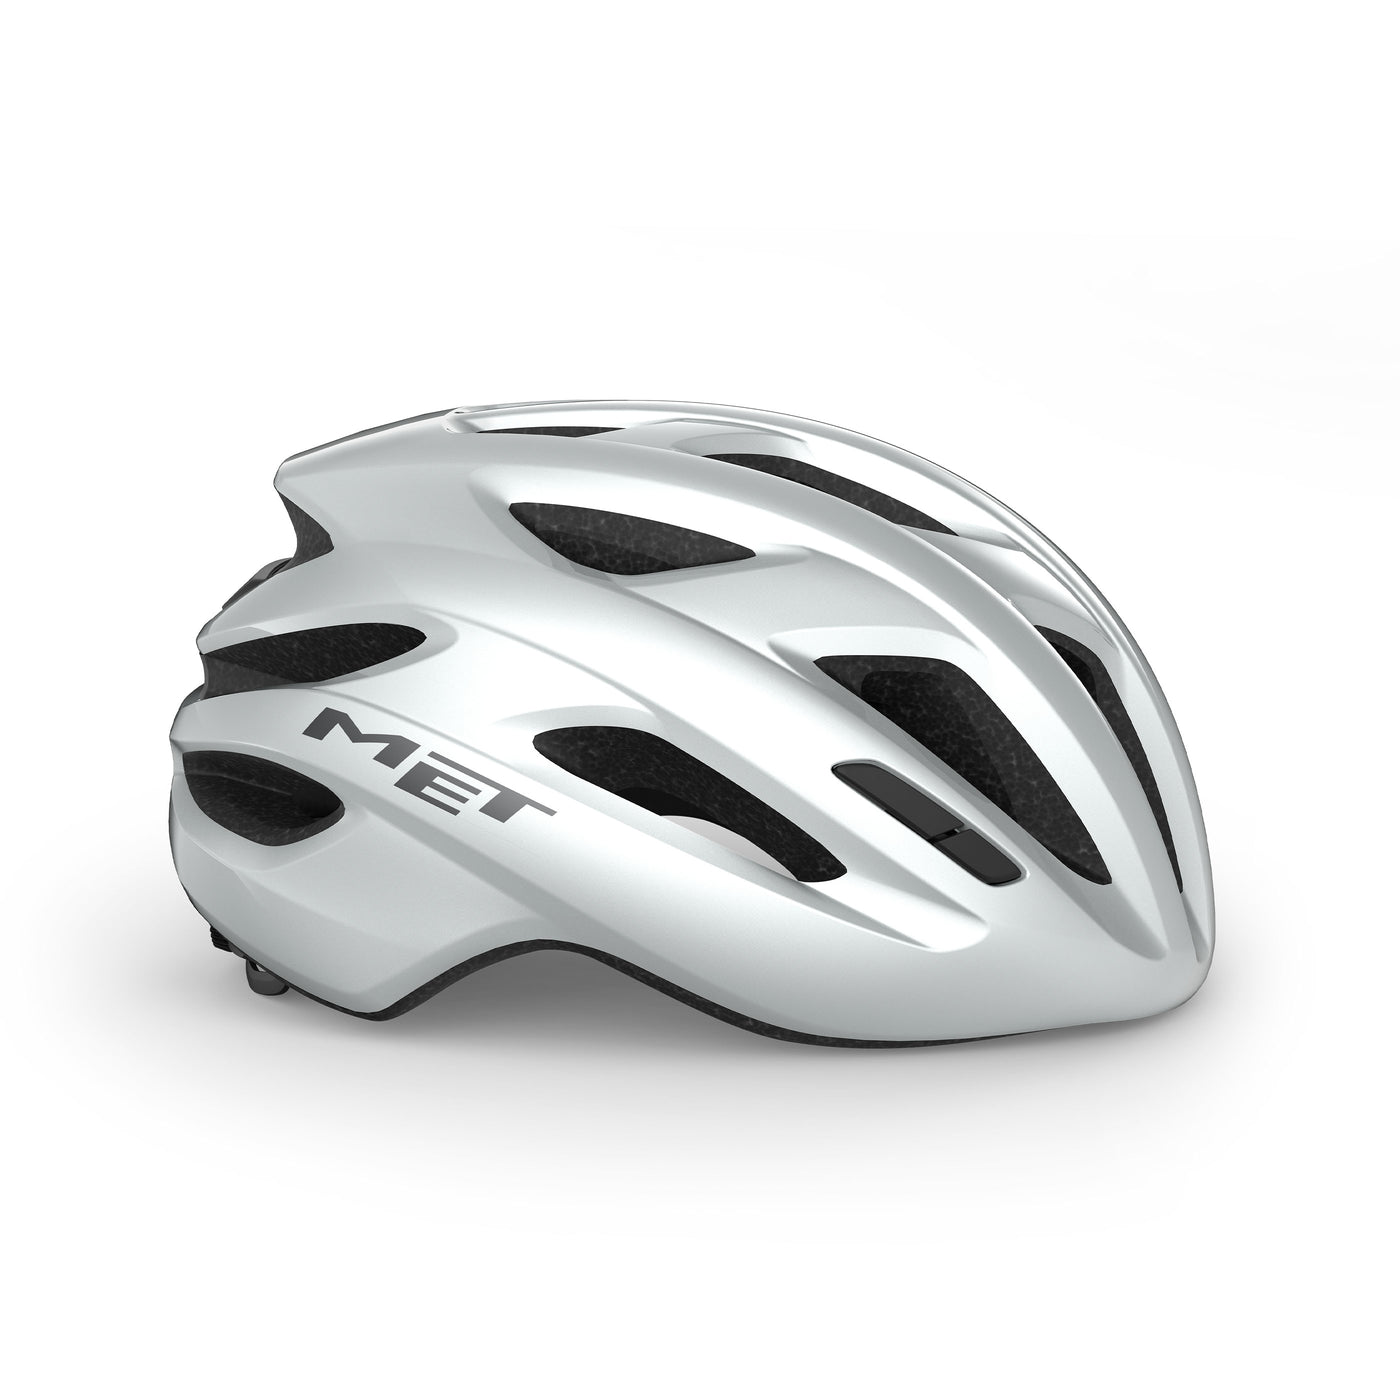 MET IDOLO MIPS Road Bike Helmet